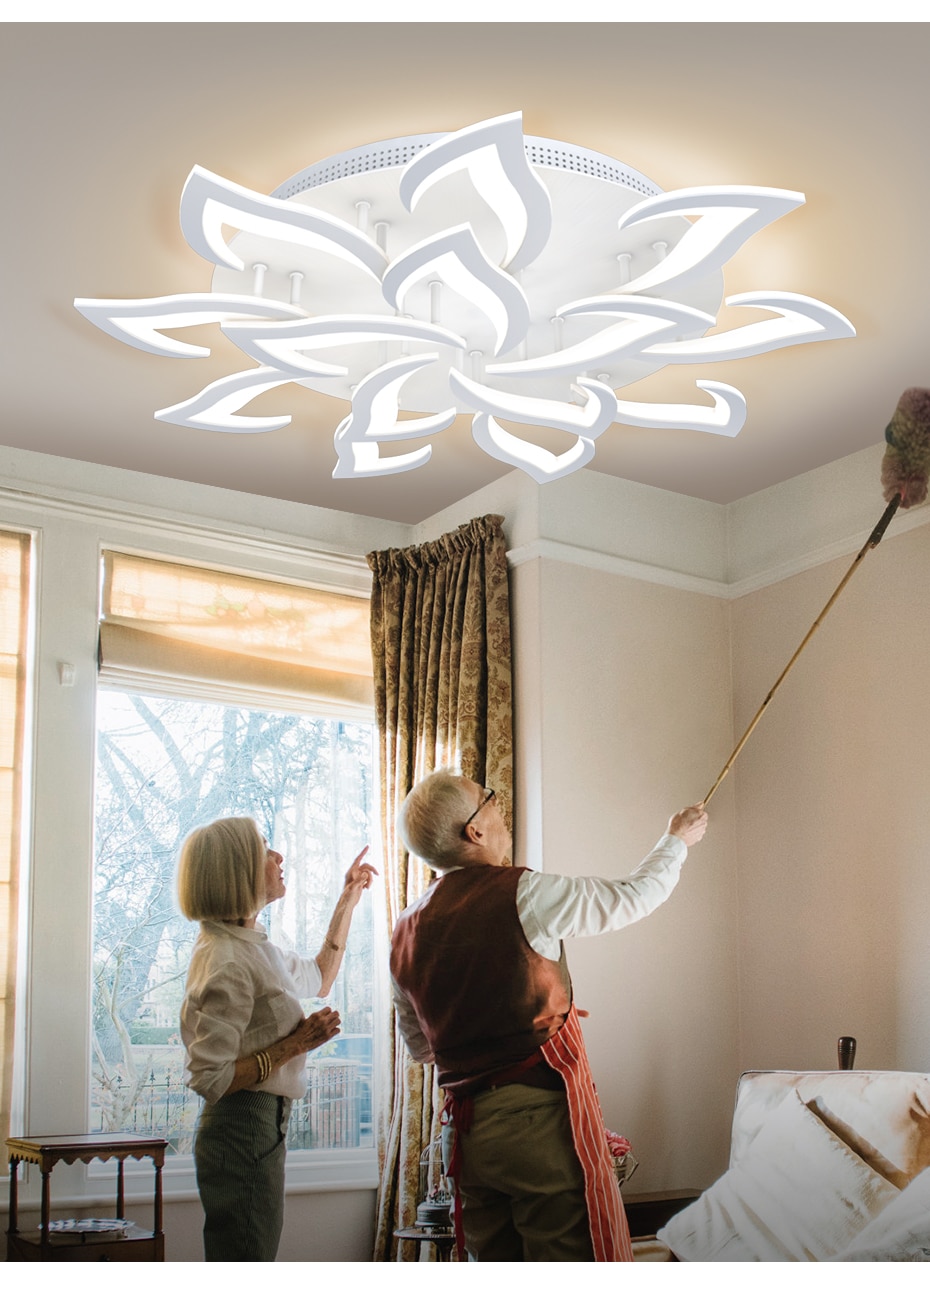 New led Chandelier For Living Room Bedroom Home chandelier by sala Modern Led Ceiling Chandelier Lamp Lighting chandelier